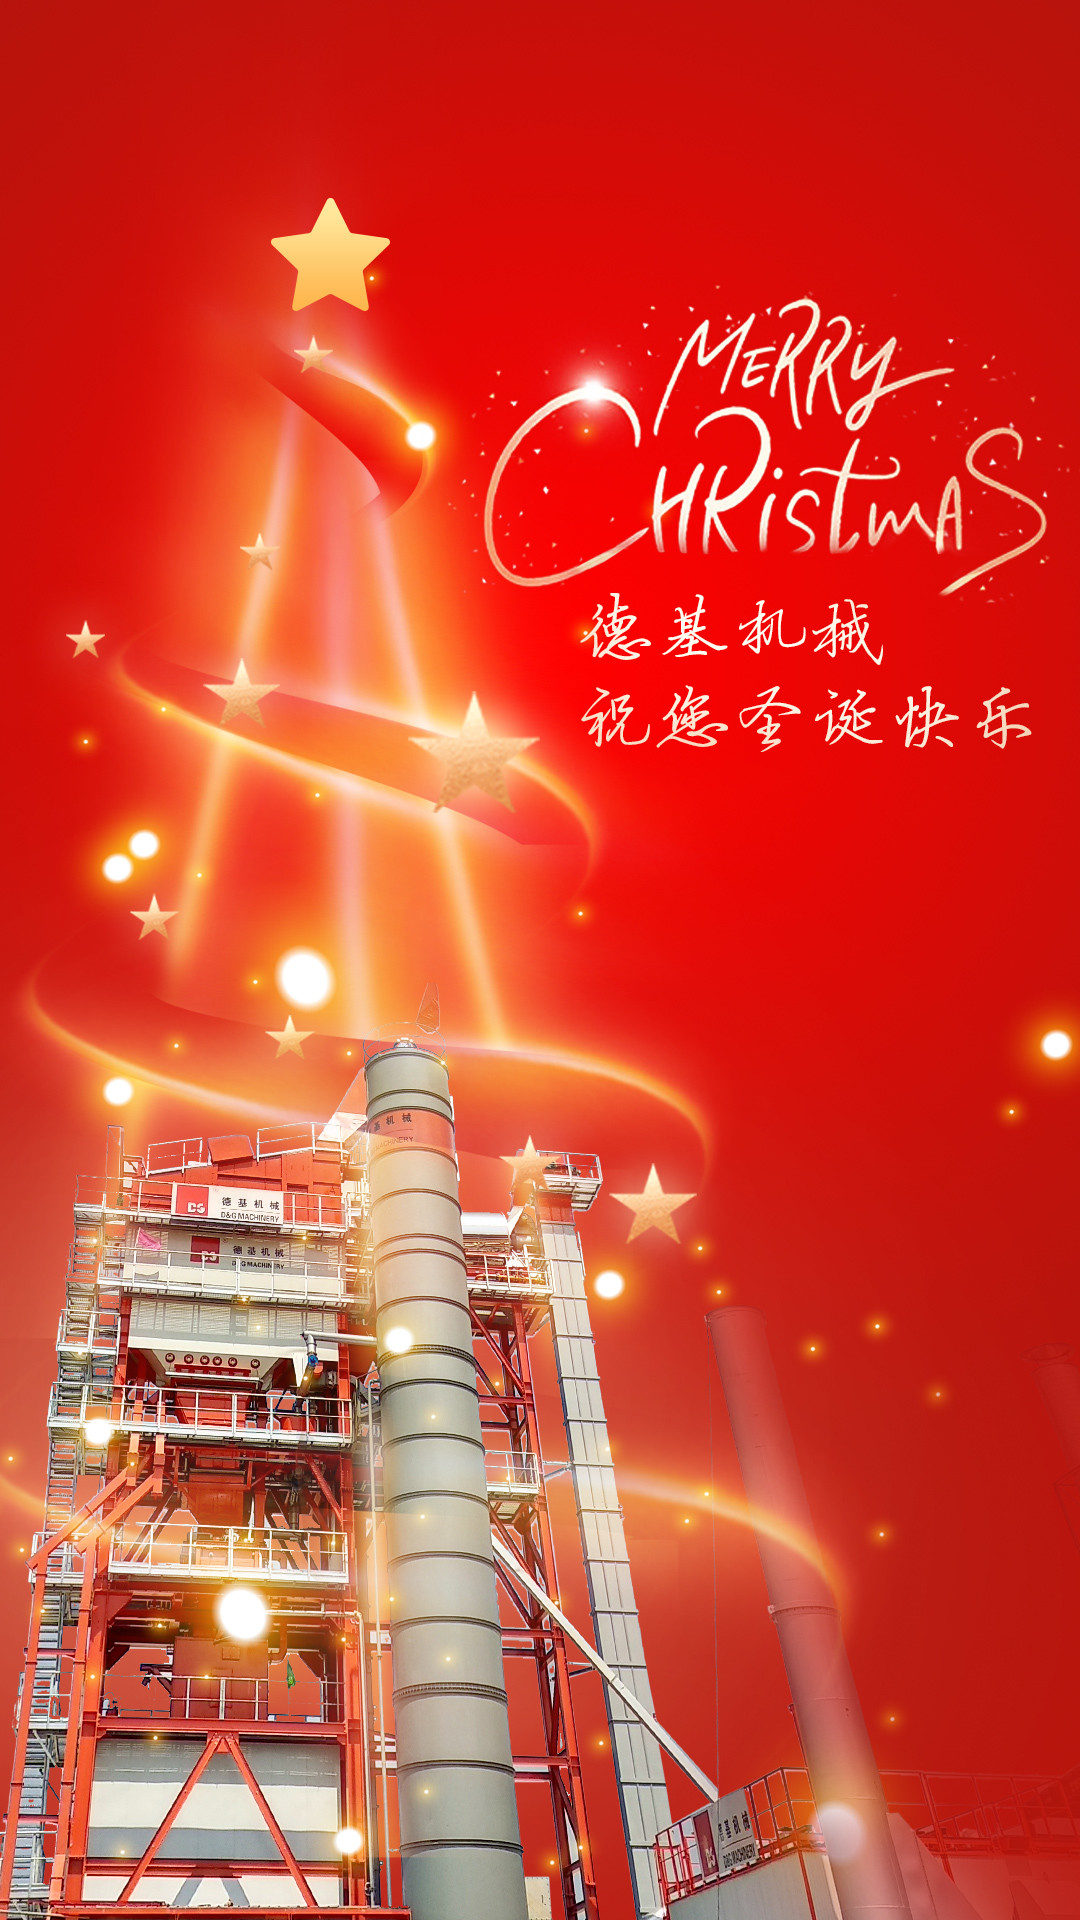 С наилучшими пожеланиями счастливого Рождества от D&G Machinery